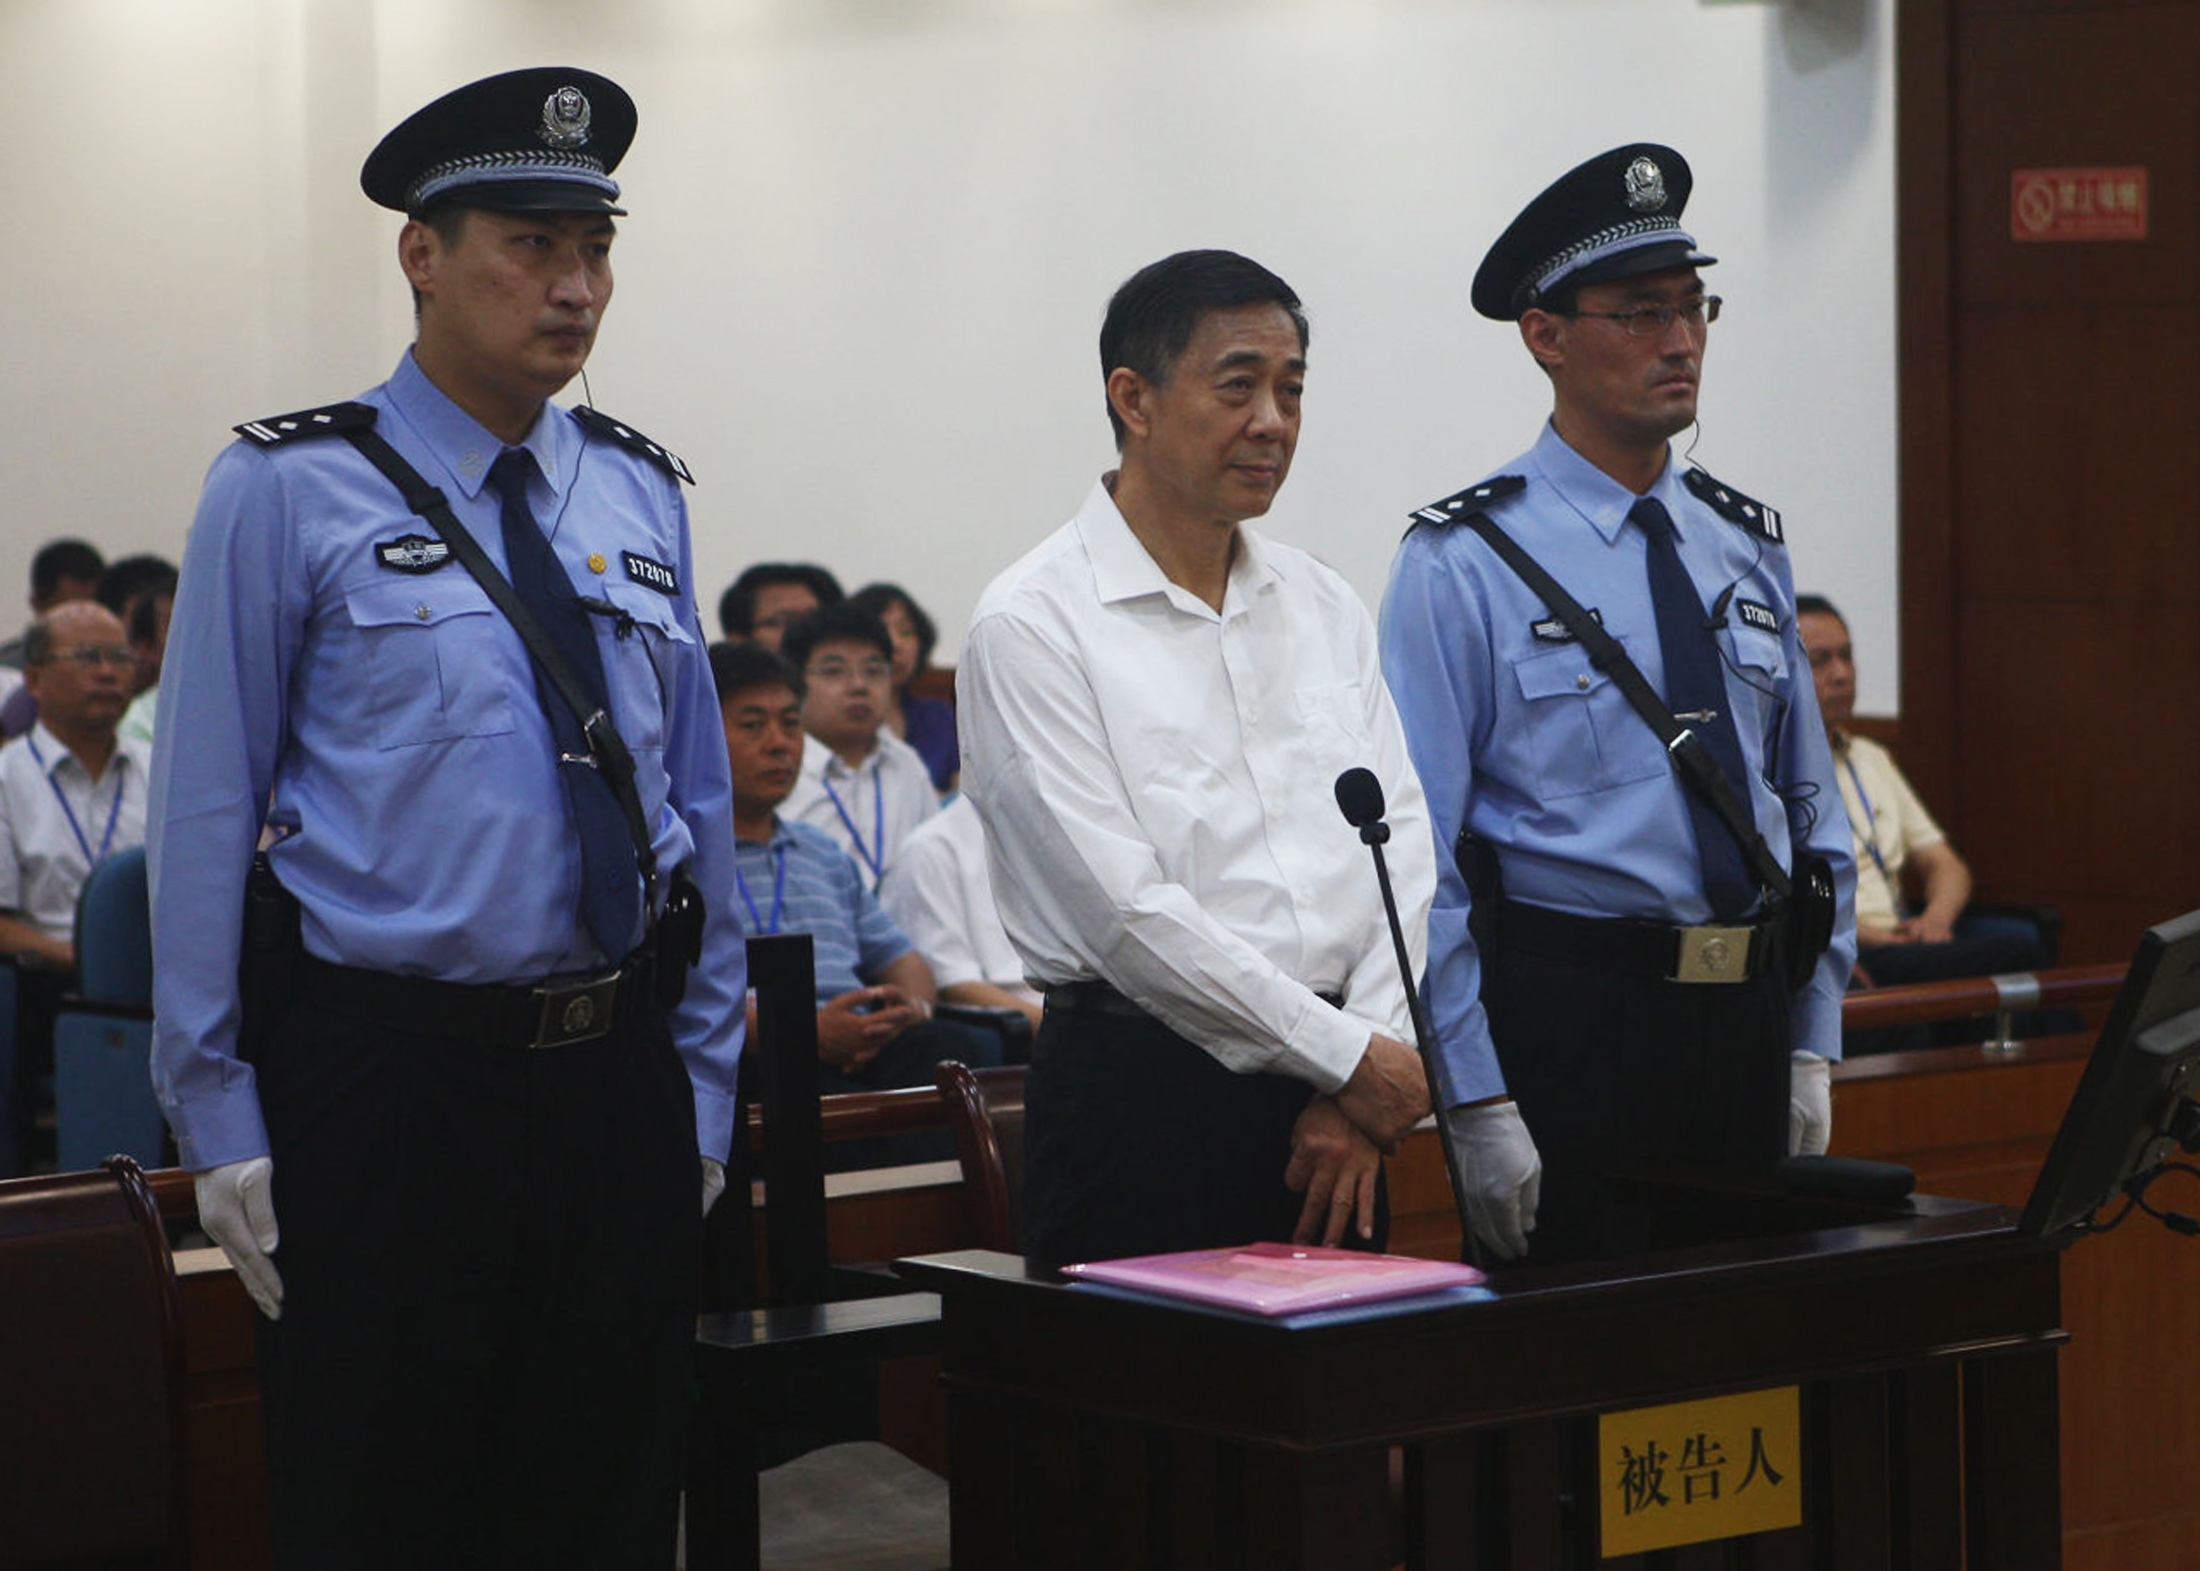 Ξεκίνησε η δίκη του πρώην ισχυρού άνδρα του κινεζικού ΚΚ, Μπο Σιλάι